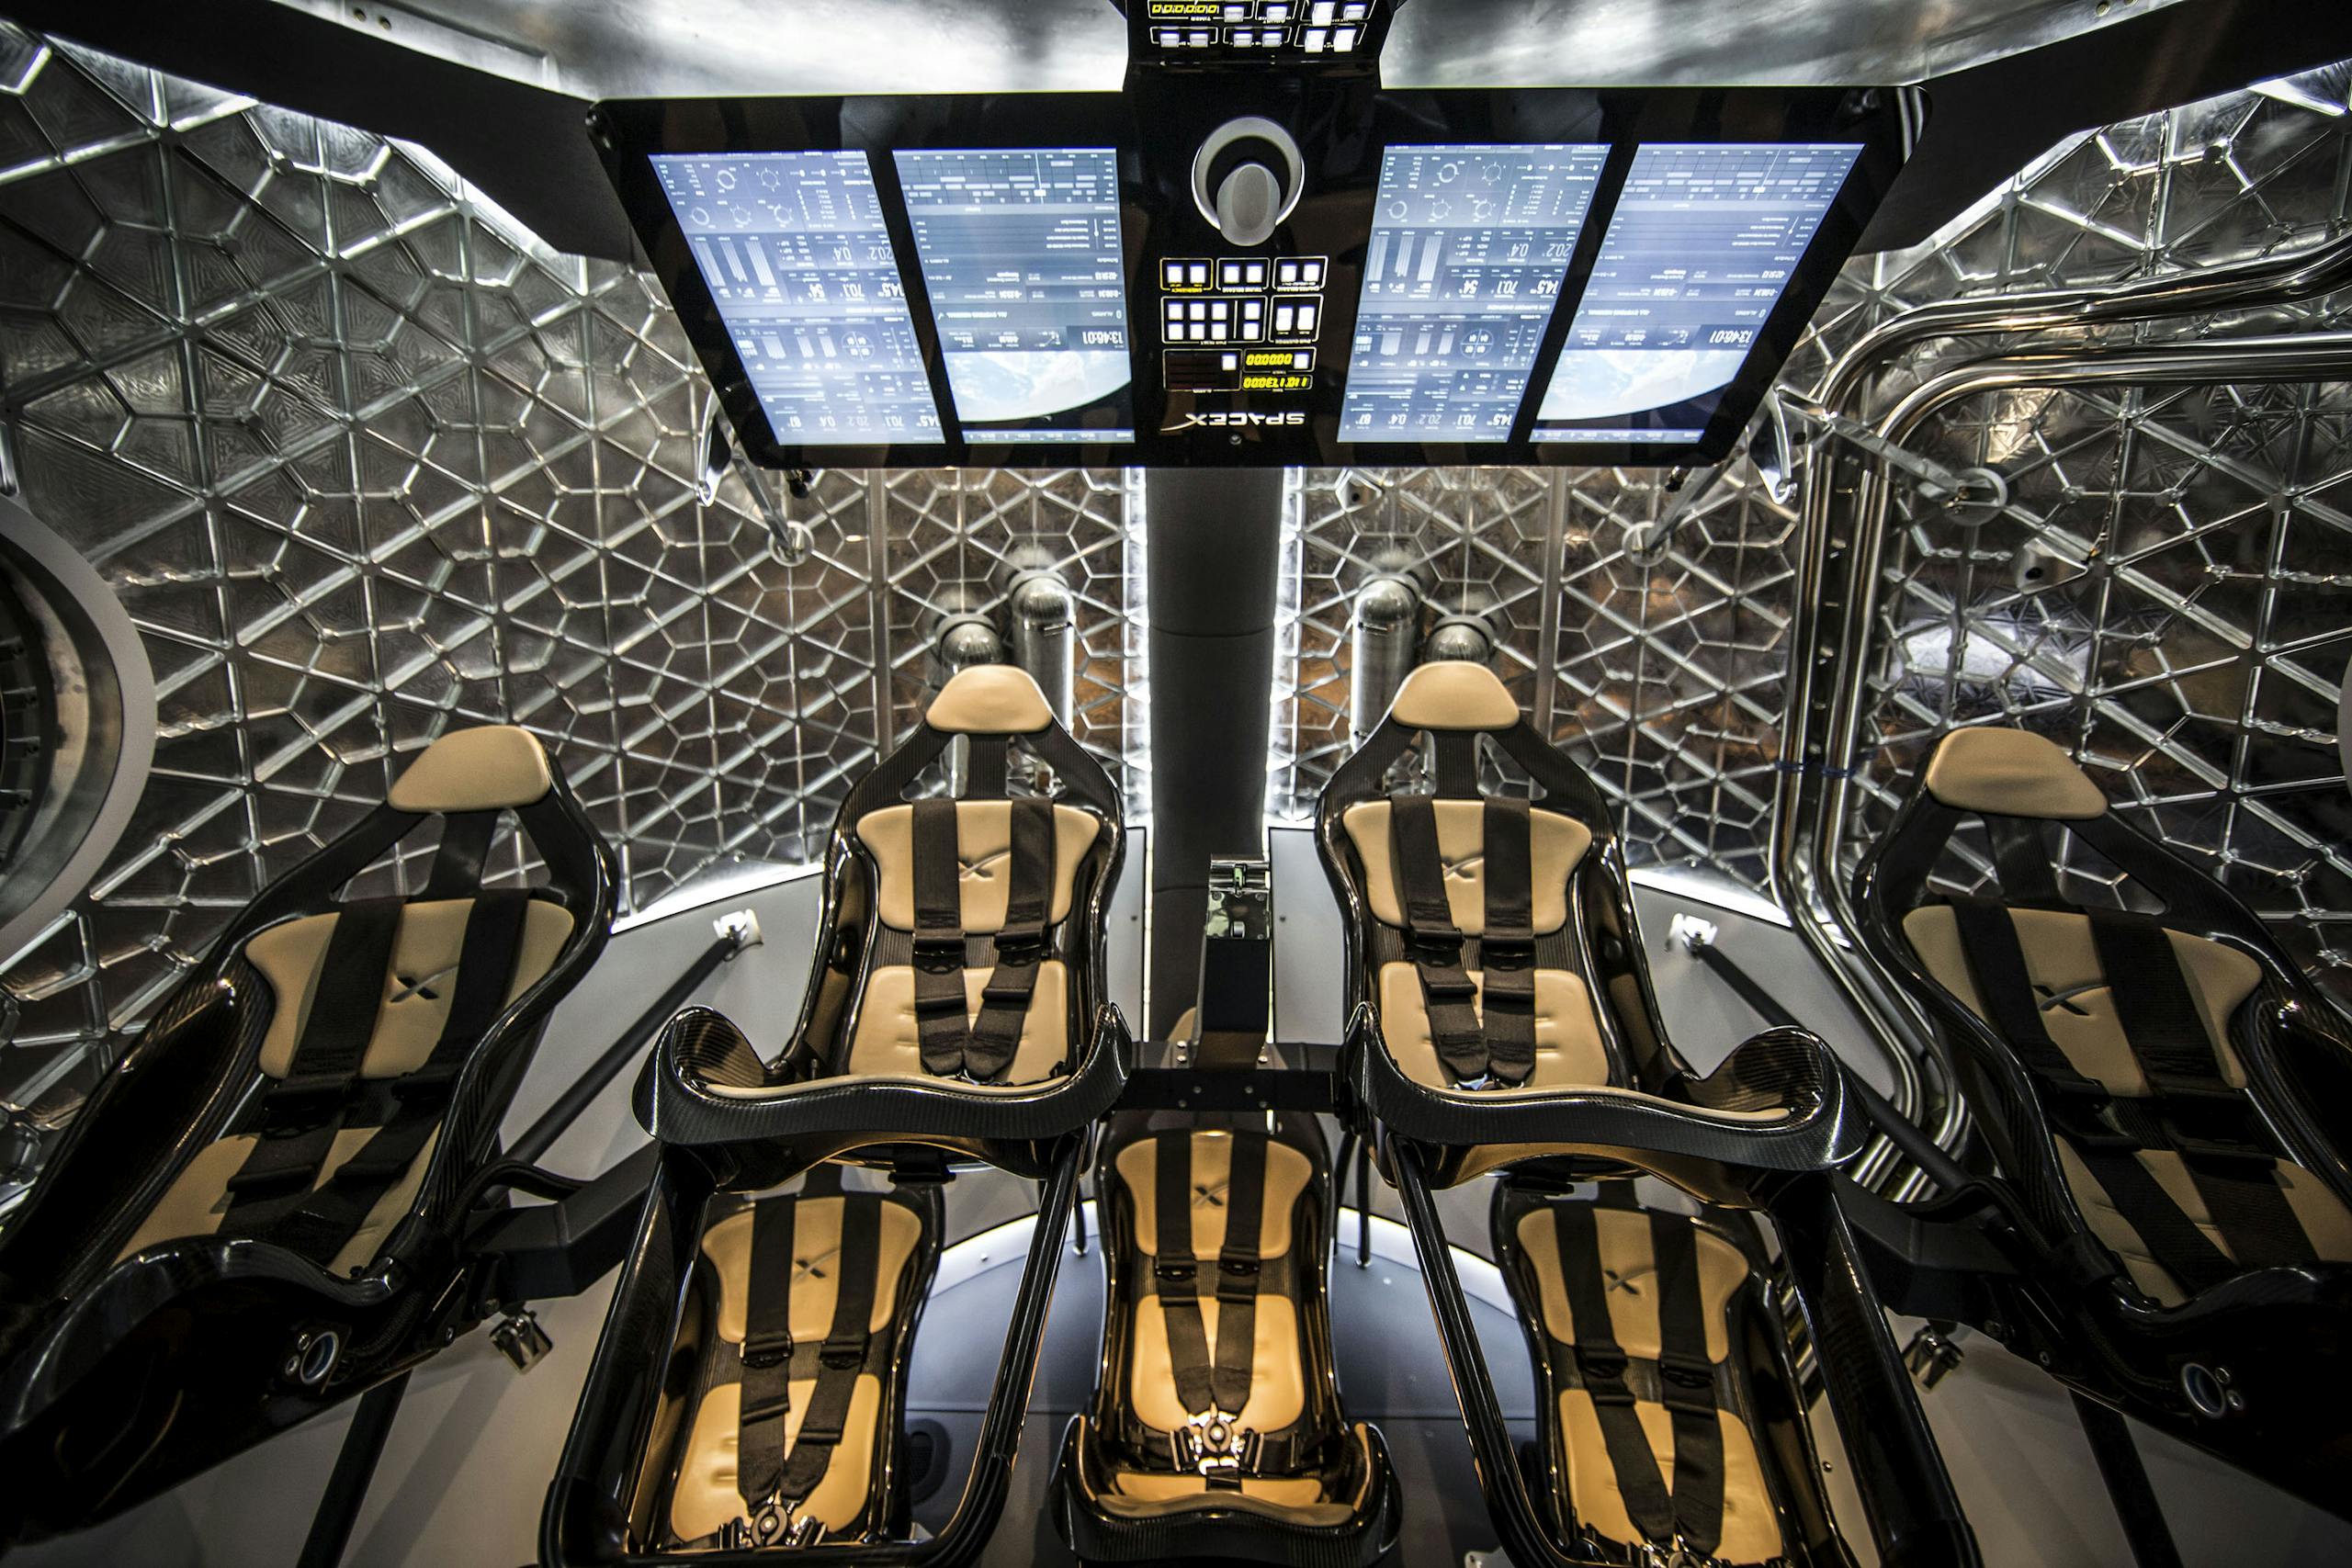 Futuristic interior of spaceship simulator for test flight mission